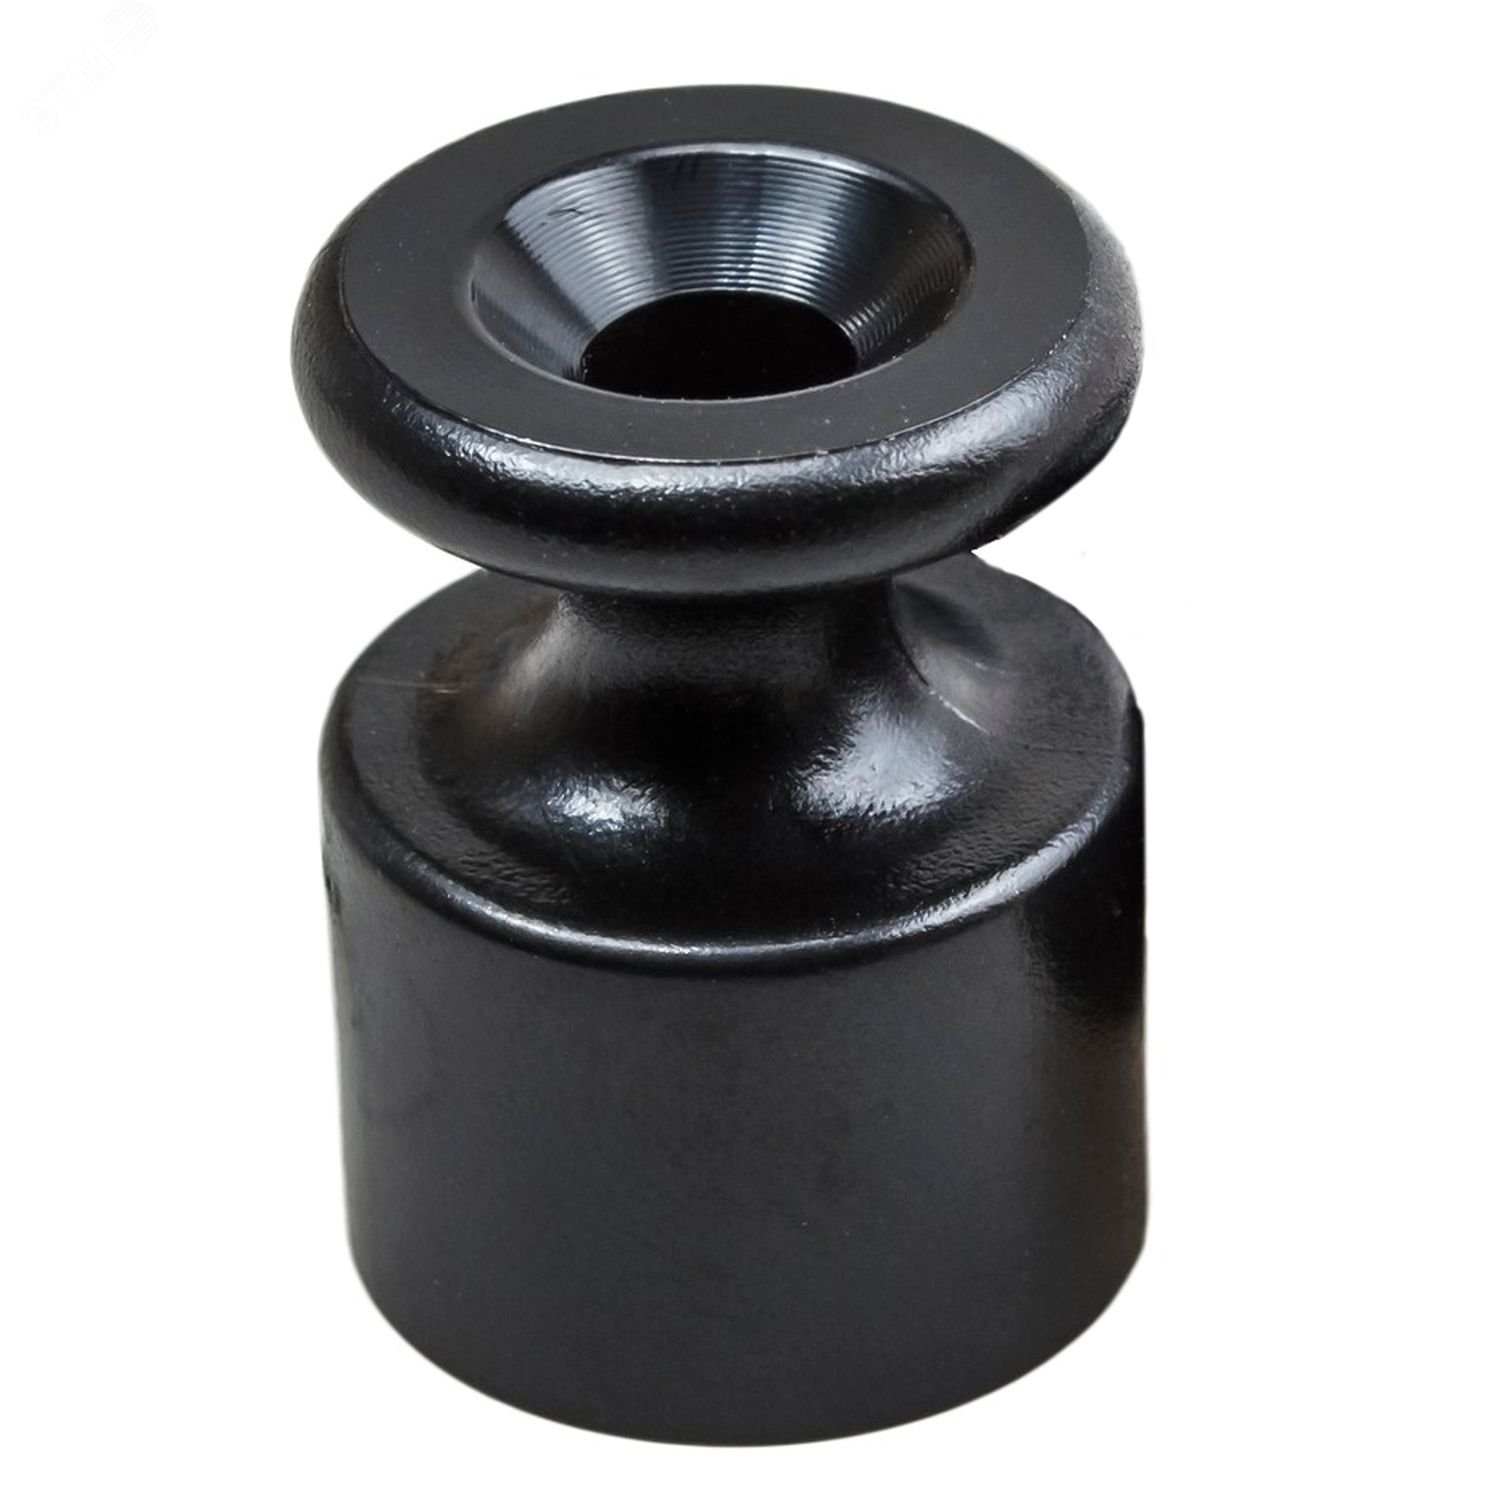 Изолятор для наружного монтажа, пластик, цвет черный (10 шт/уп) B1-551-23-10 Bironi